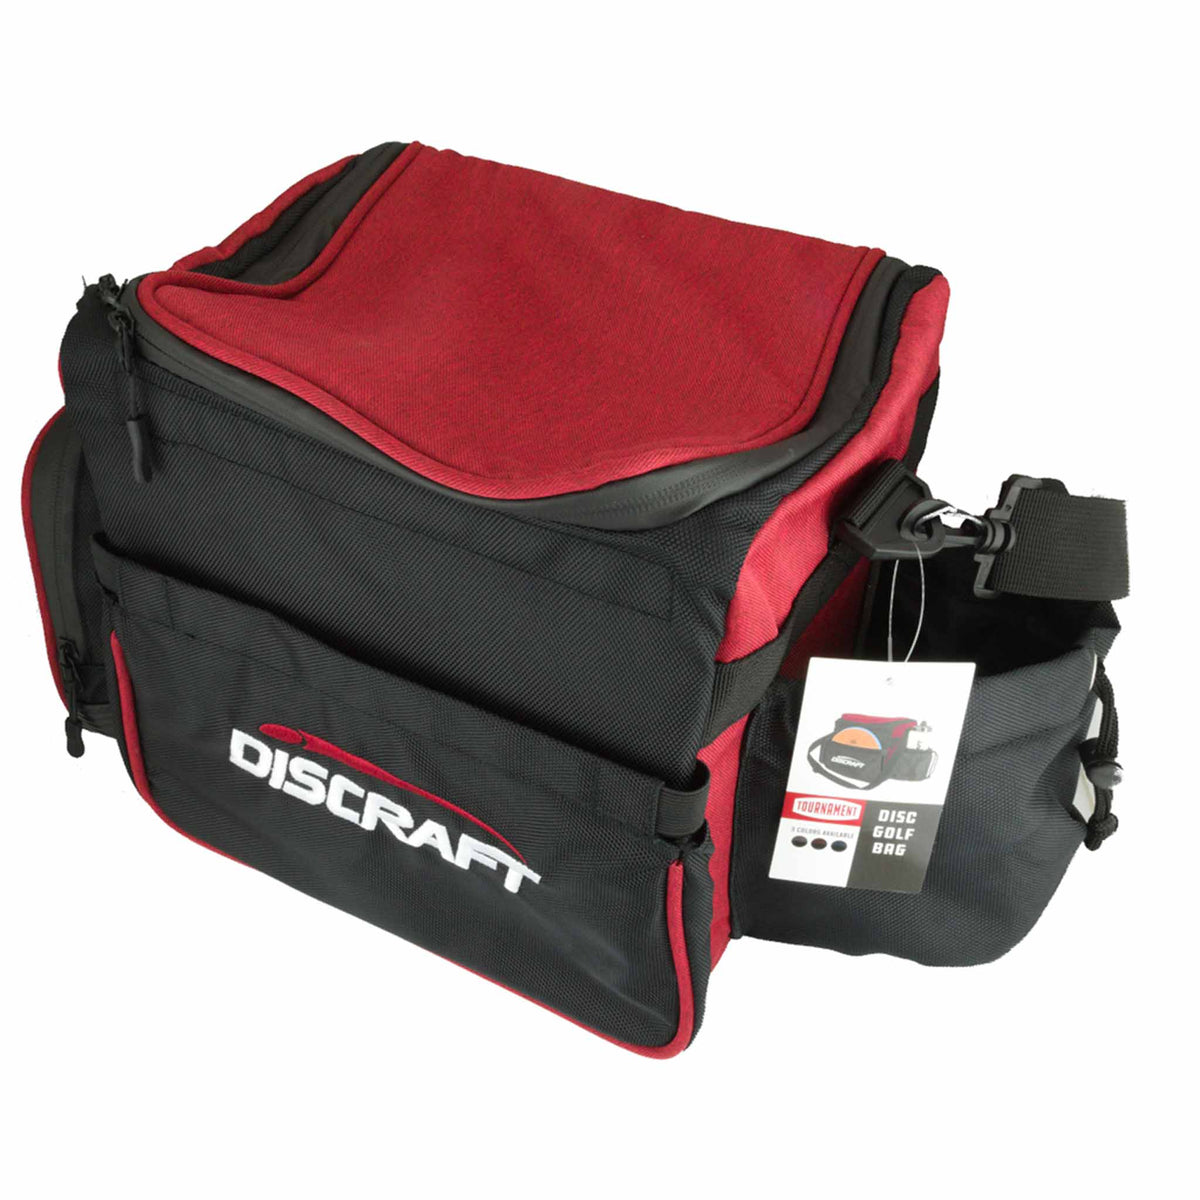 Discraft Disc Golf Shoulder Bag - Red